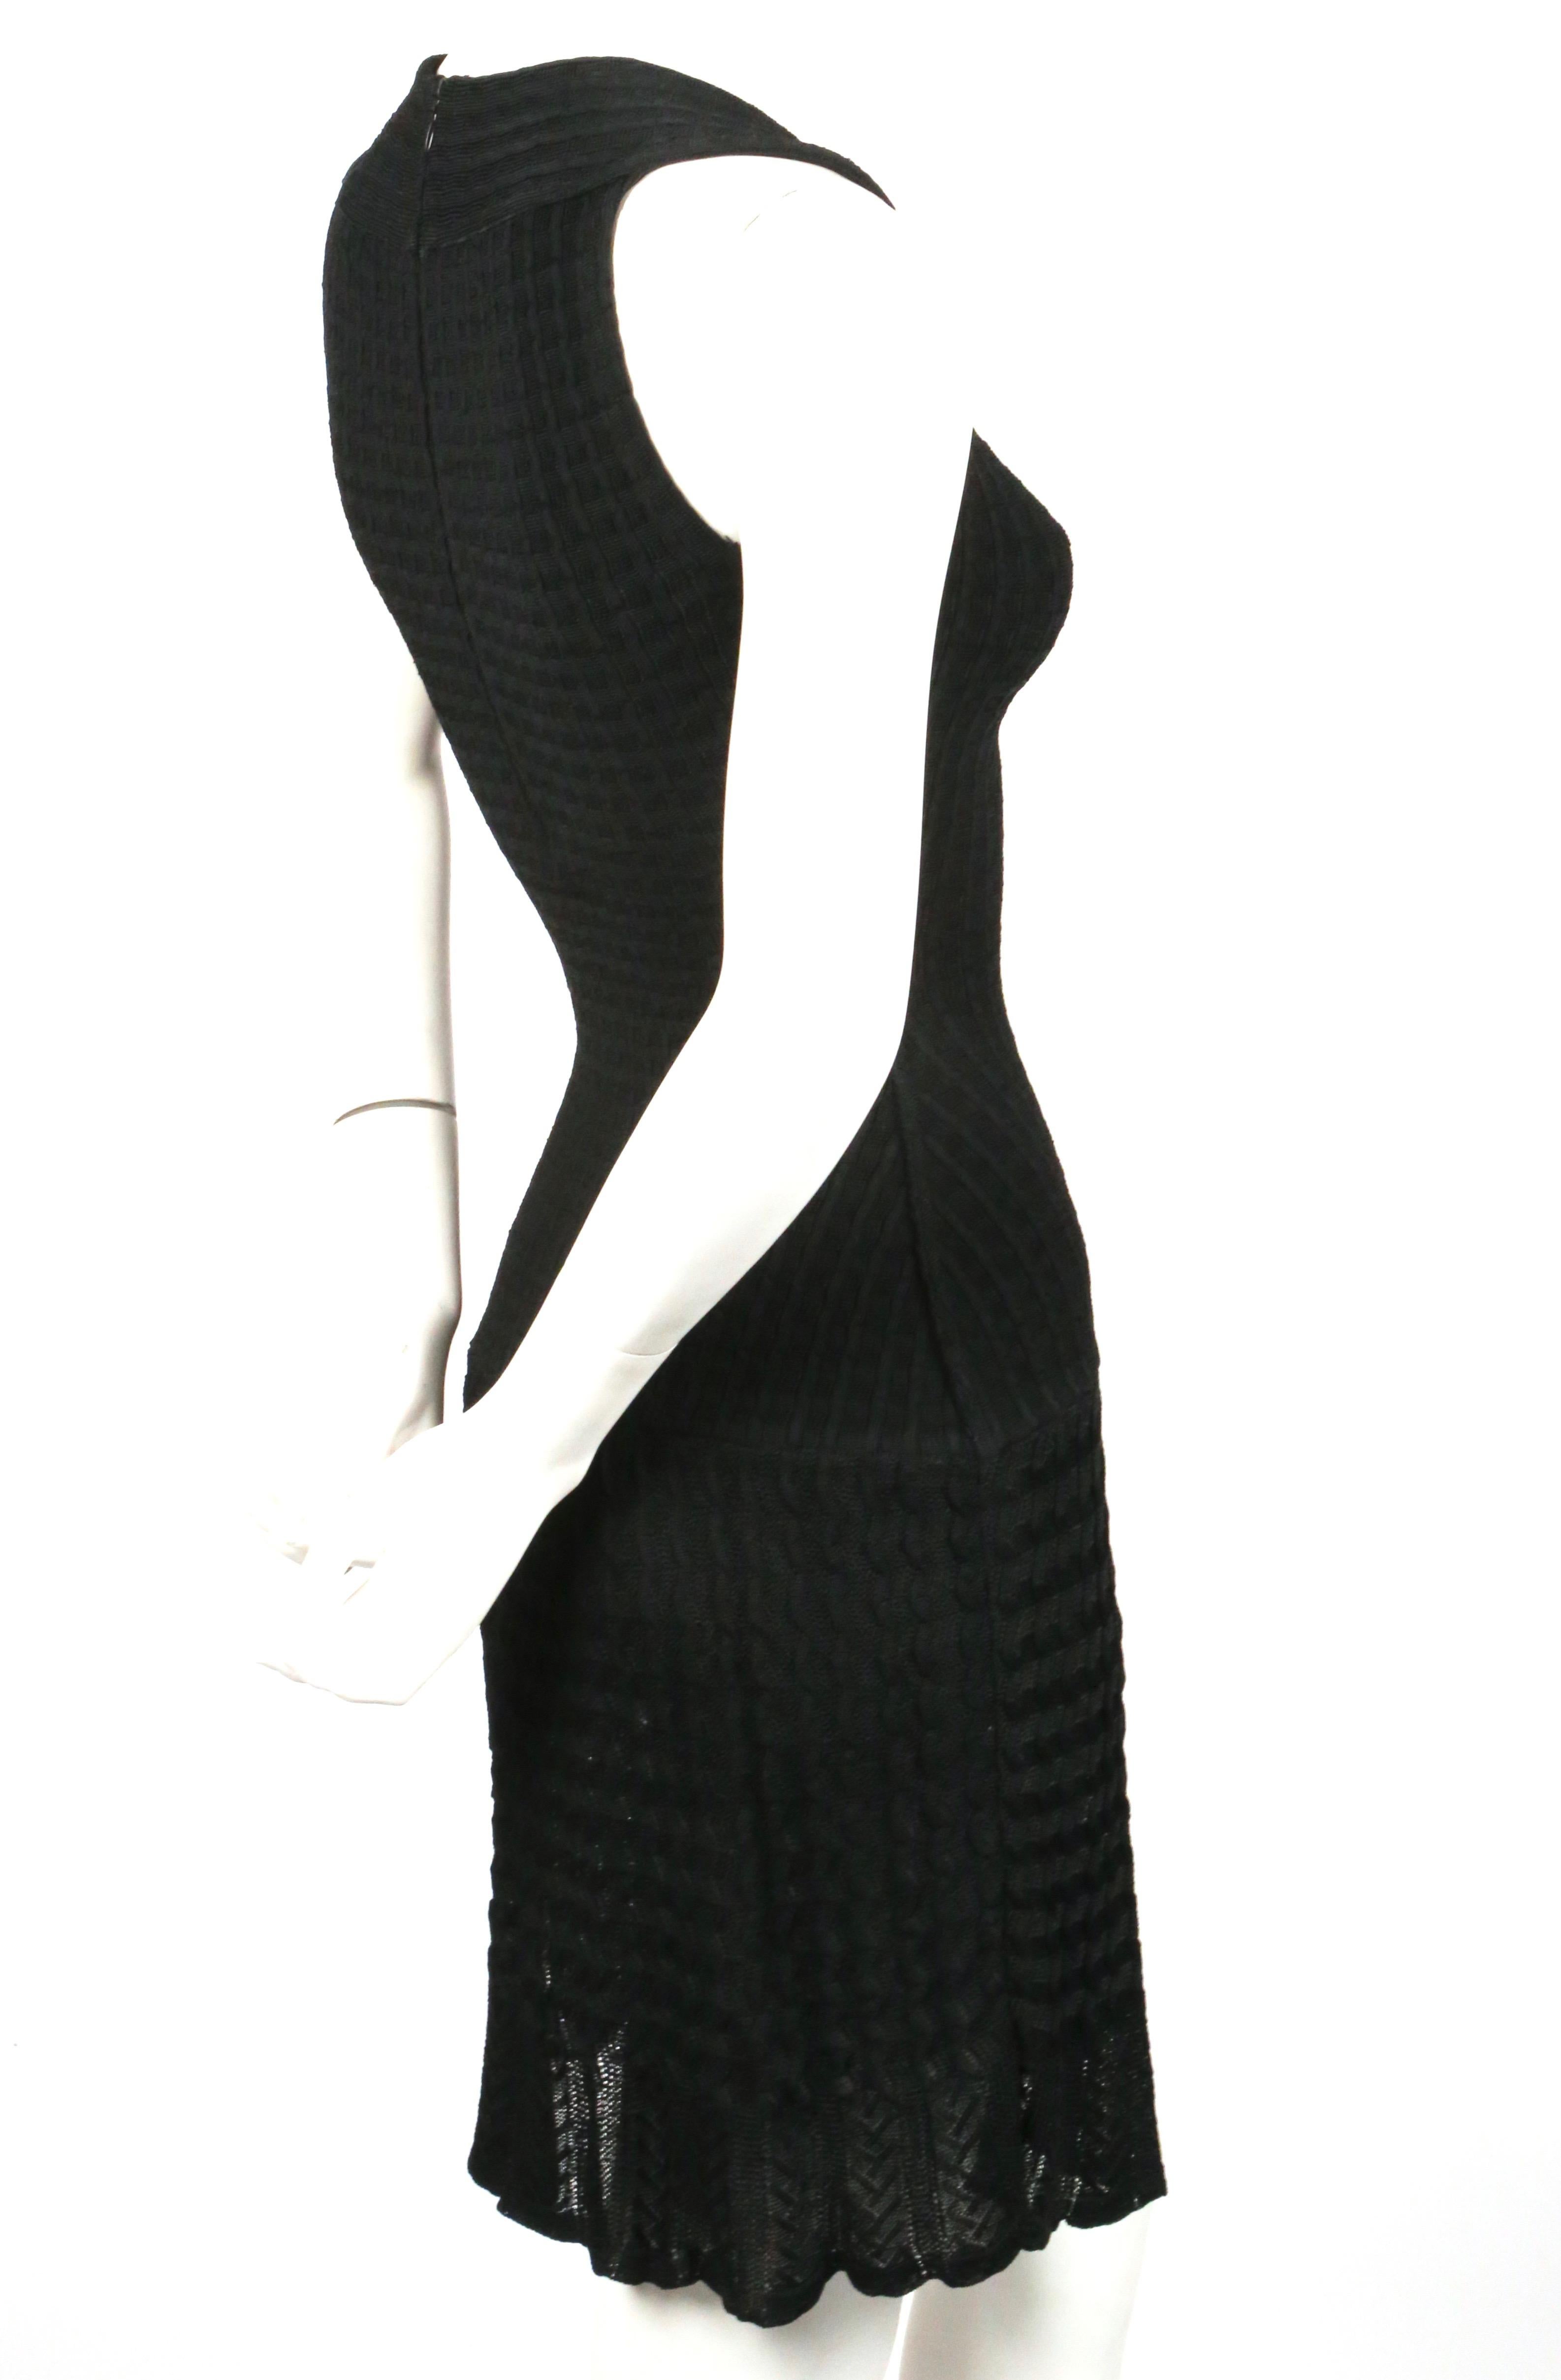 Tiefschwarzes Kleid aus Wollstrick mit halbdurchsichtigem Häkeldetail von Azzedine Alaia aus den 1990er Jahren. Mit Größe XS gekennzeichnet. Maße ungefähr (ungestreckt): 24